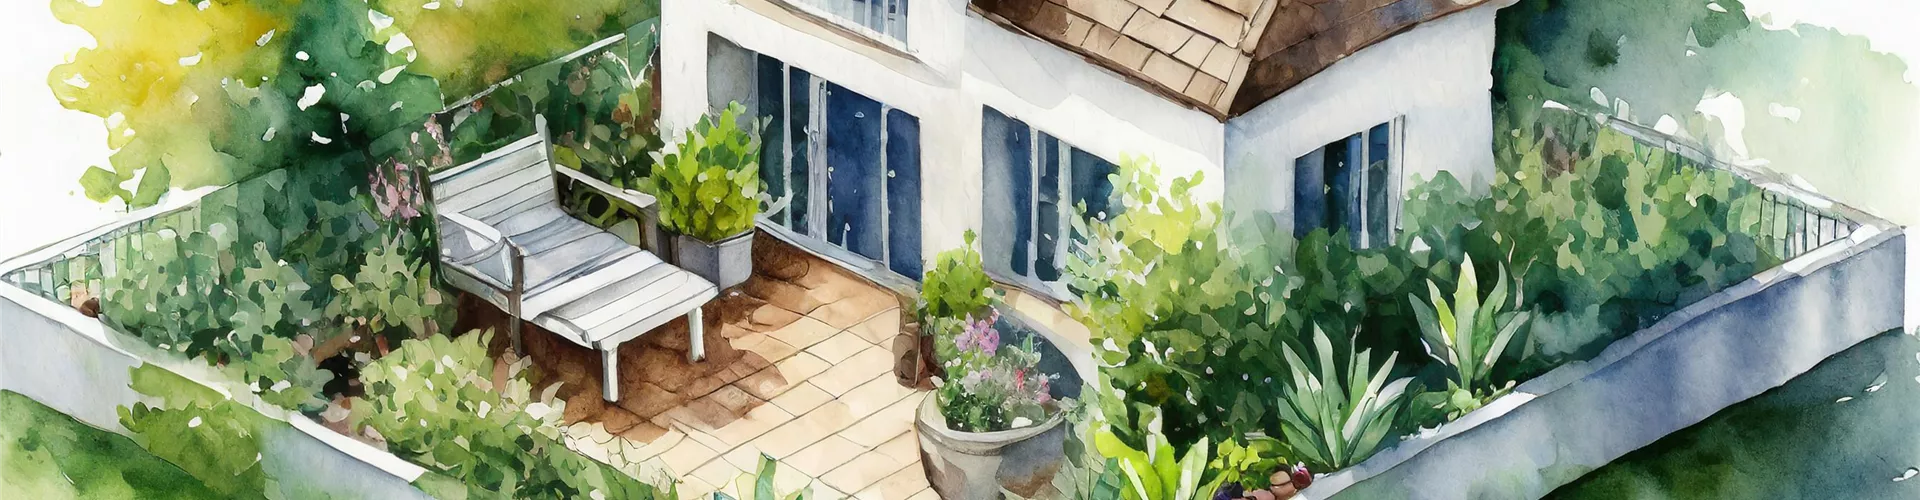 Balkon- und Terrassen-Welt - Viele Ideen für jeden Geschmack - Bellaflora